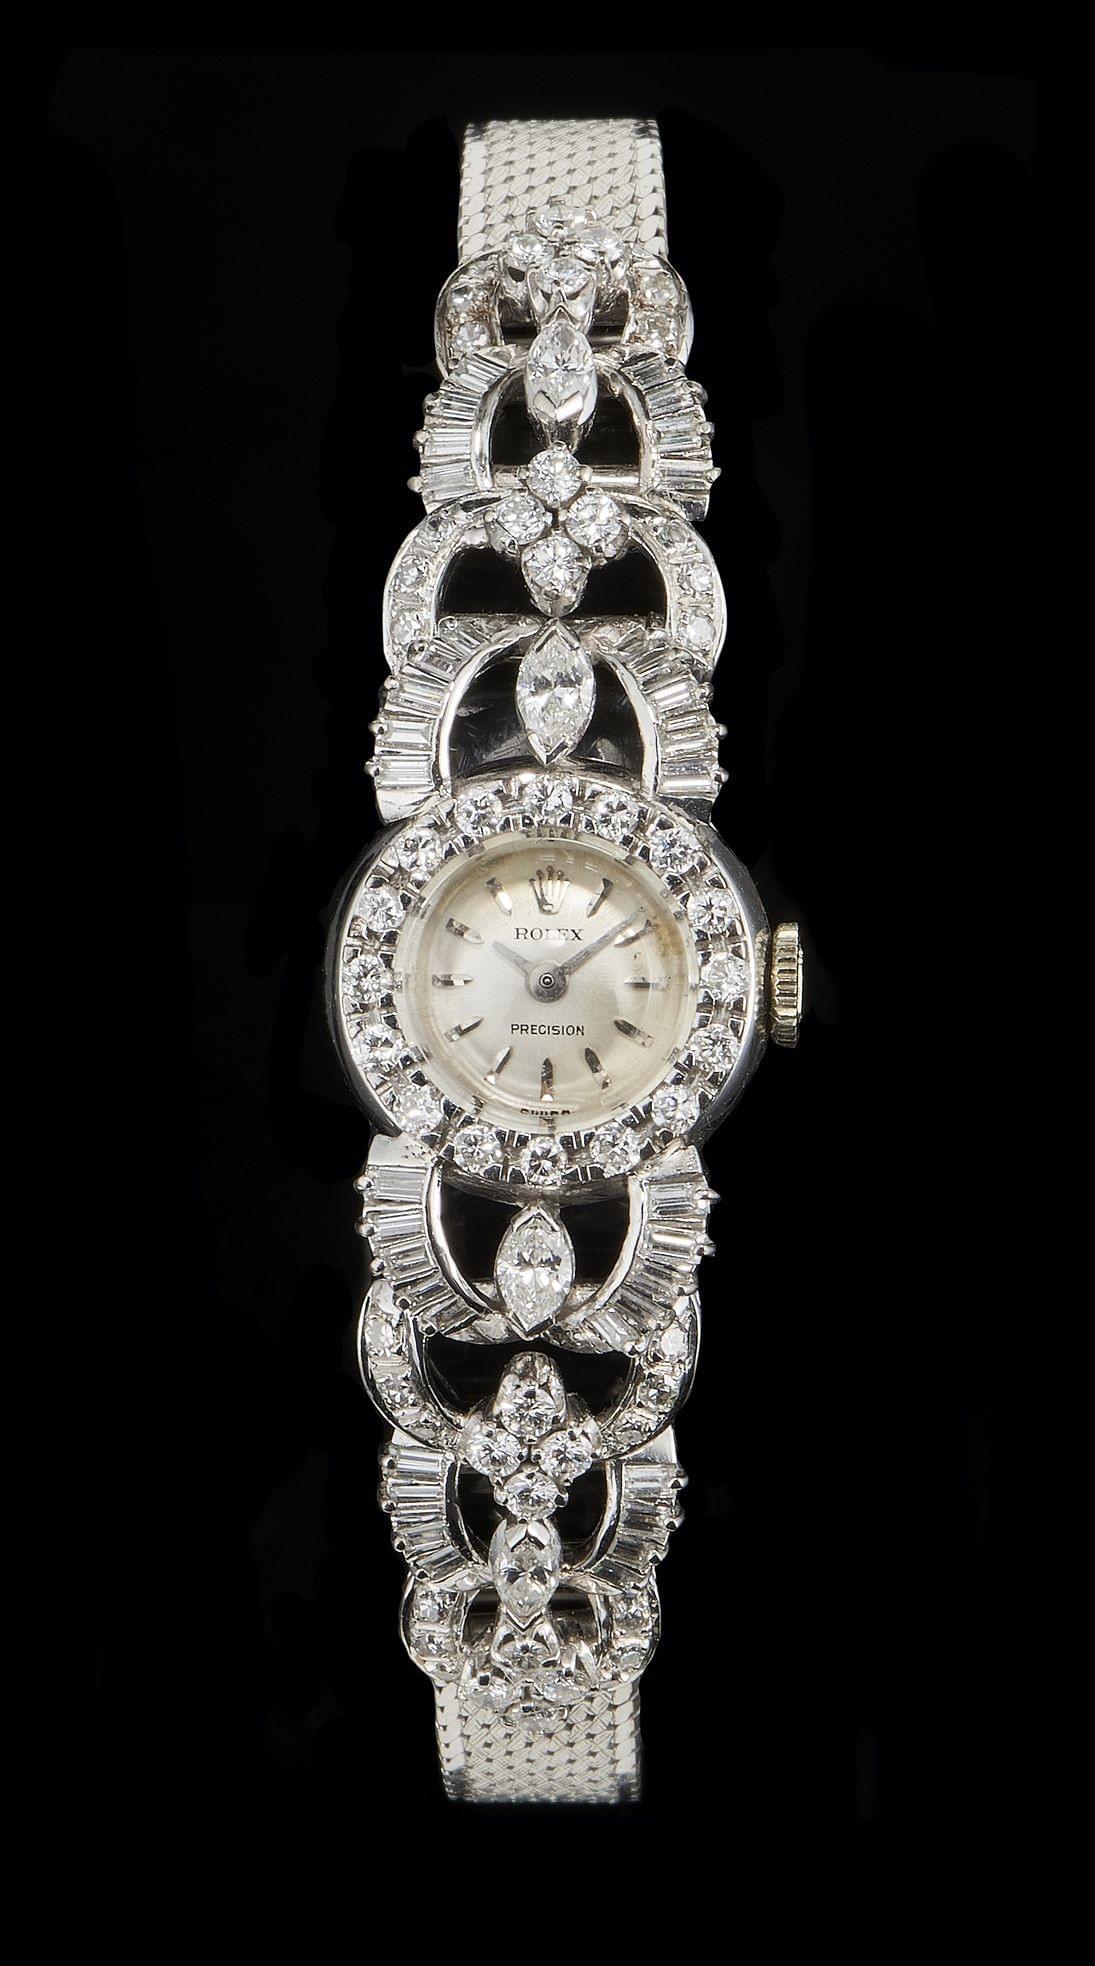 Rolex, Précision, montre-bracelet ronde mécanique sertie de diamants taille brillant, marquise et baguette